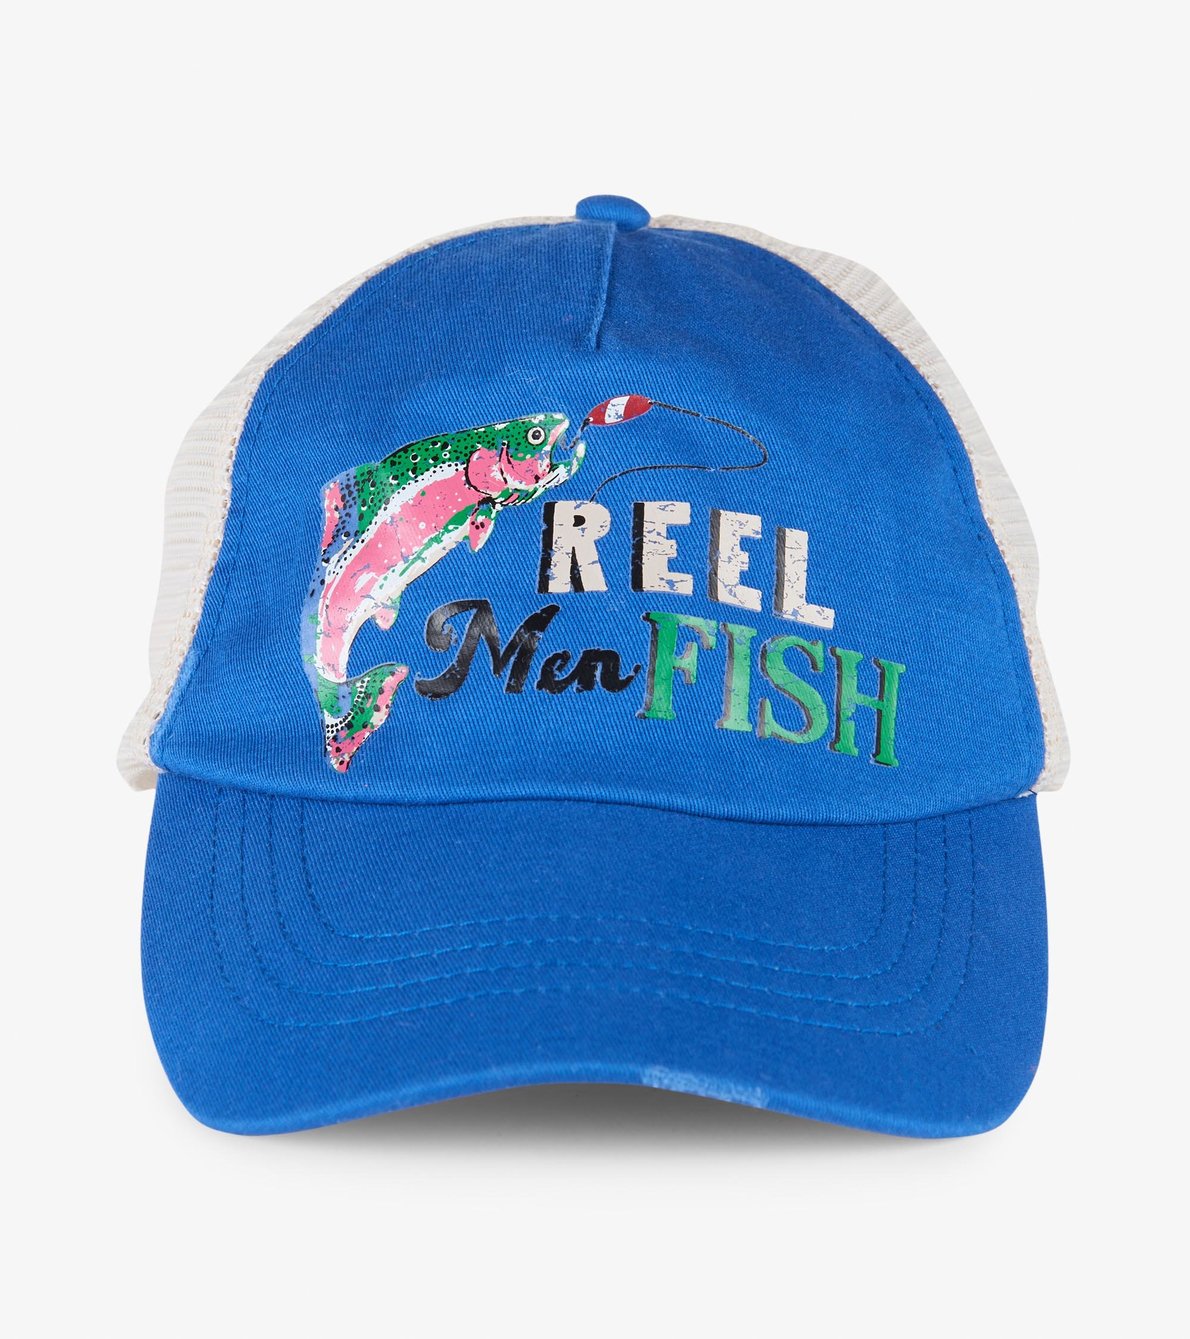 View larger image of Reel Men Fish Adult Baseball Cap